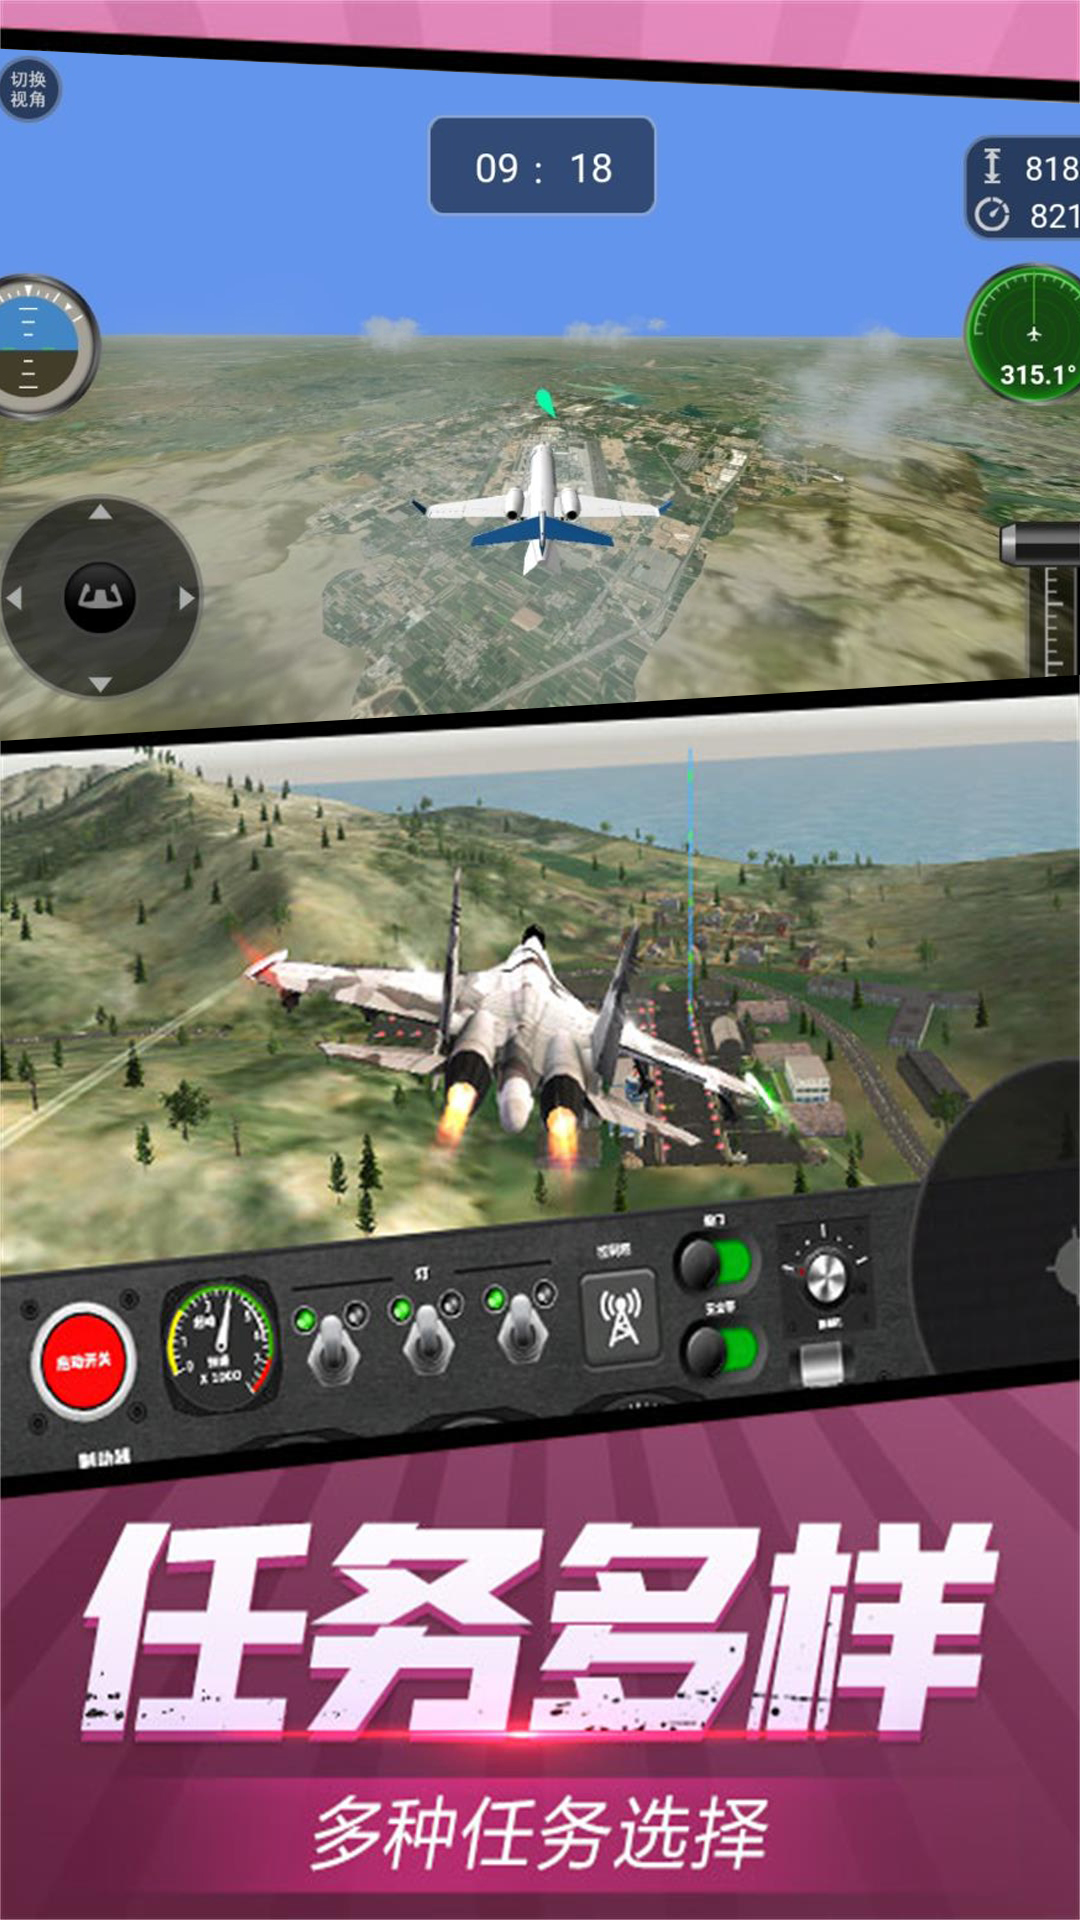 虚拟飞行模拟游戏 截图2